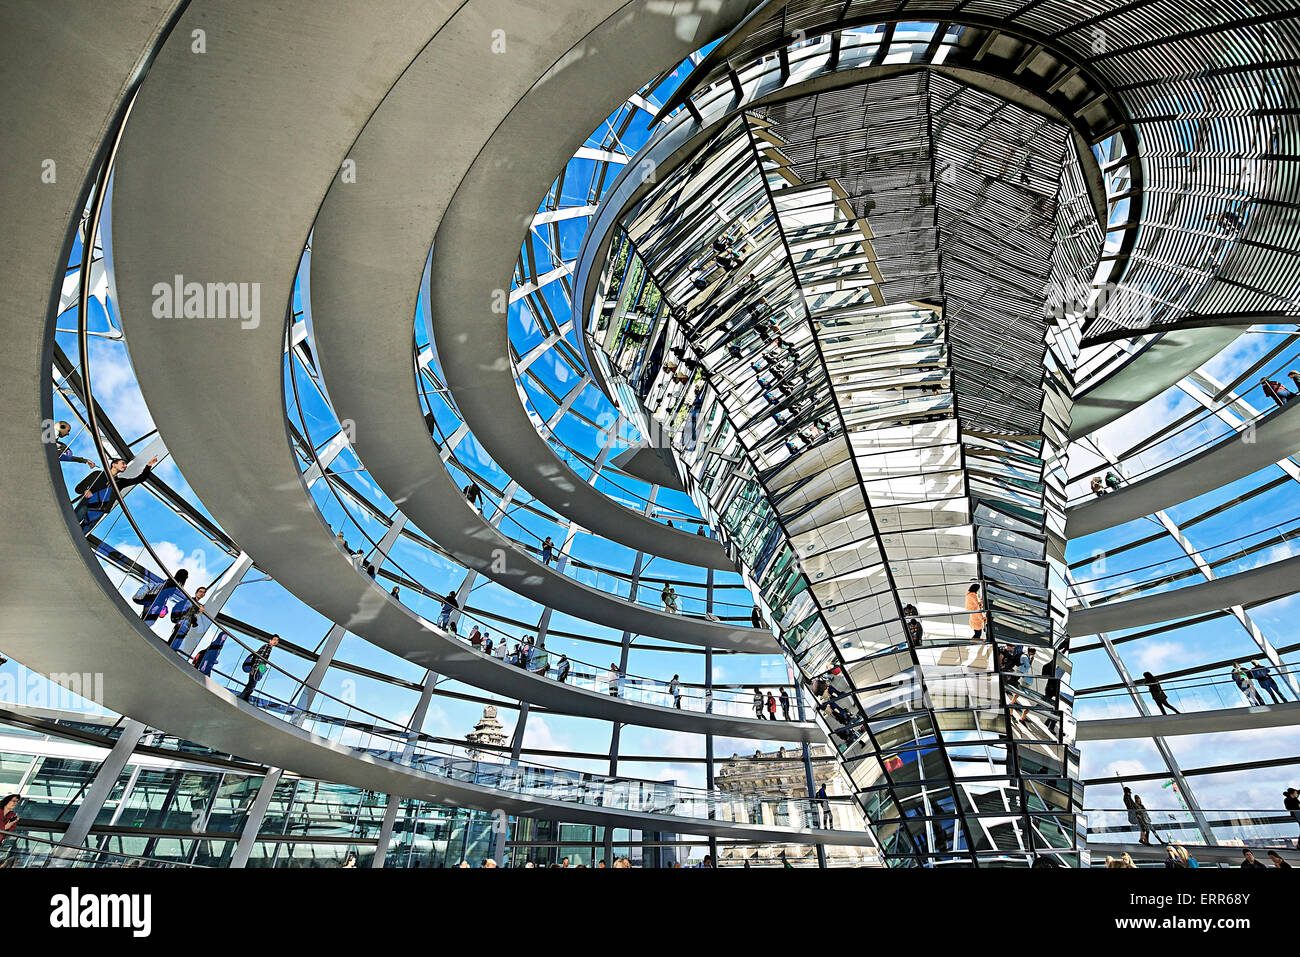 Allemagne, Berlin, le Reichstag, l'intérieur de la coupole de verre de Norman Foster architecte. Banque D'Images